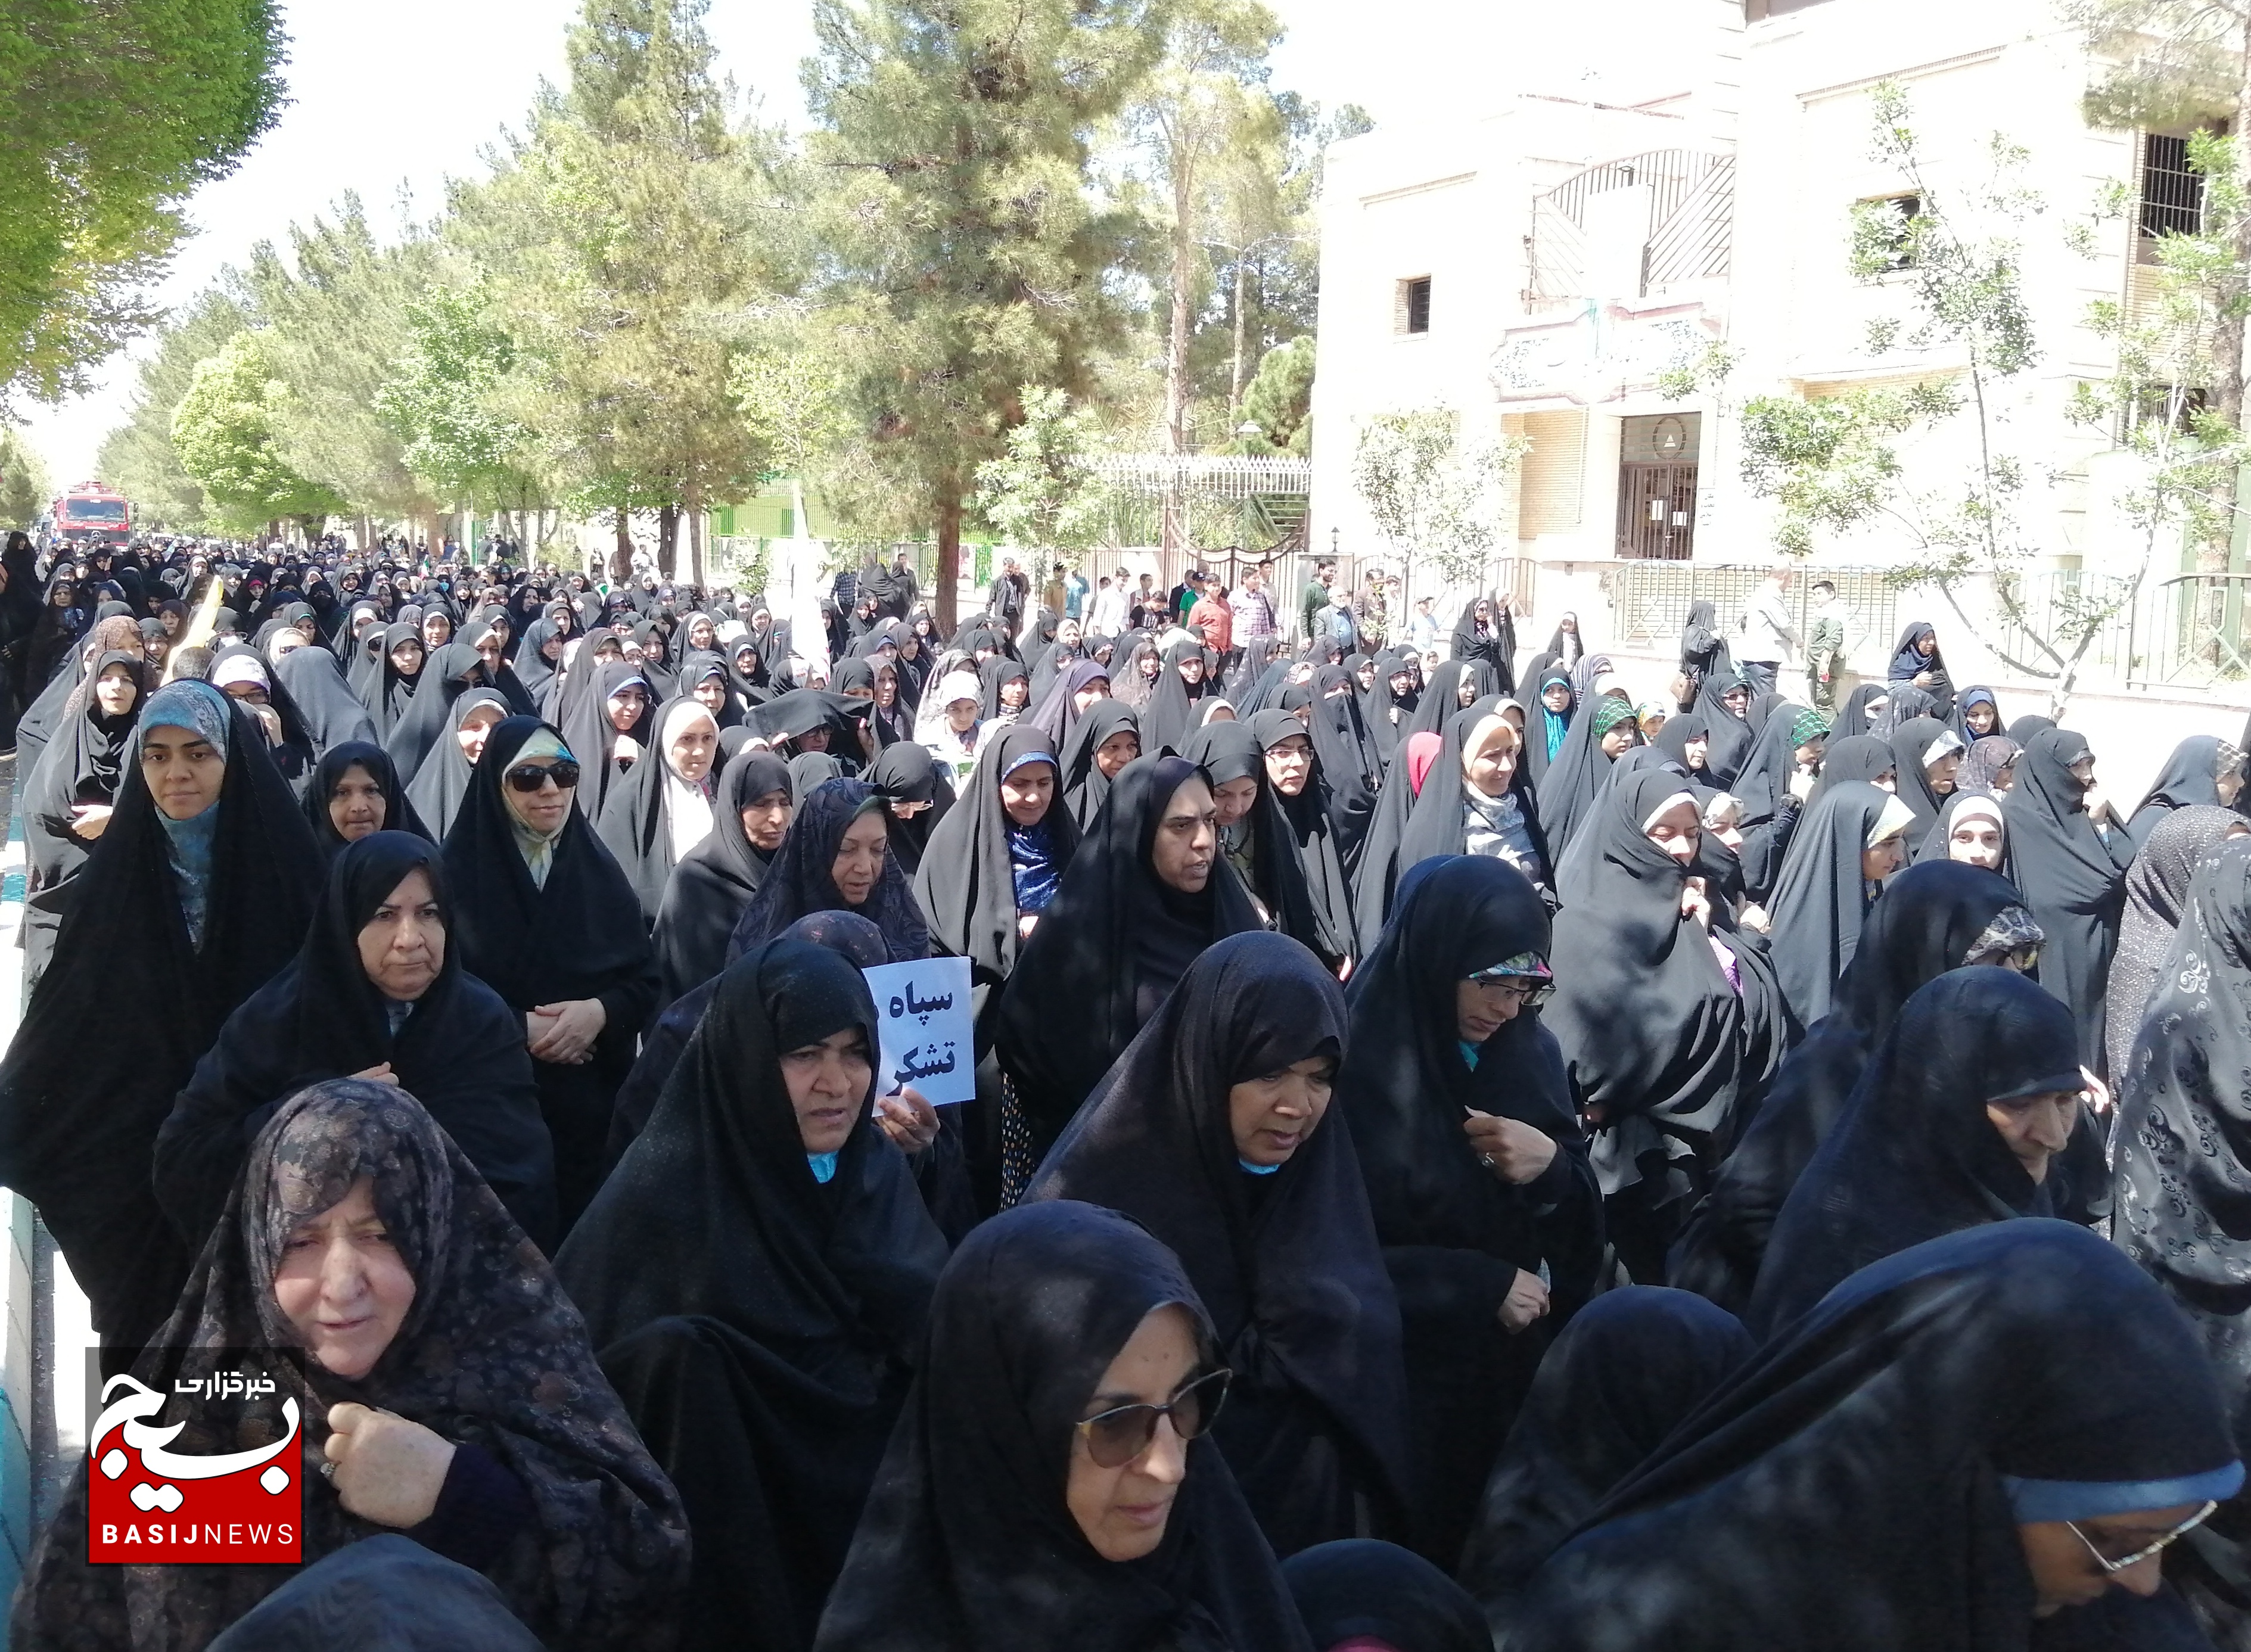 راهپیمایی مردمی ضد صهیونیسم و استکبار جهانی در کرمان برگزار شد